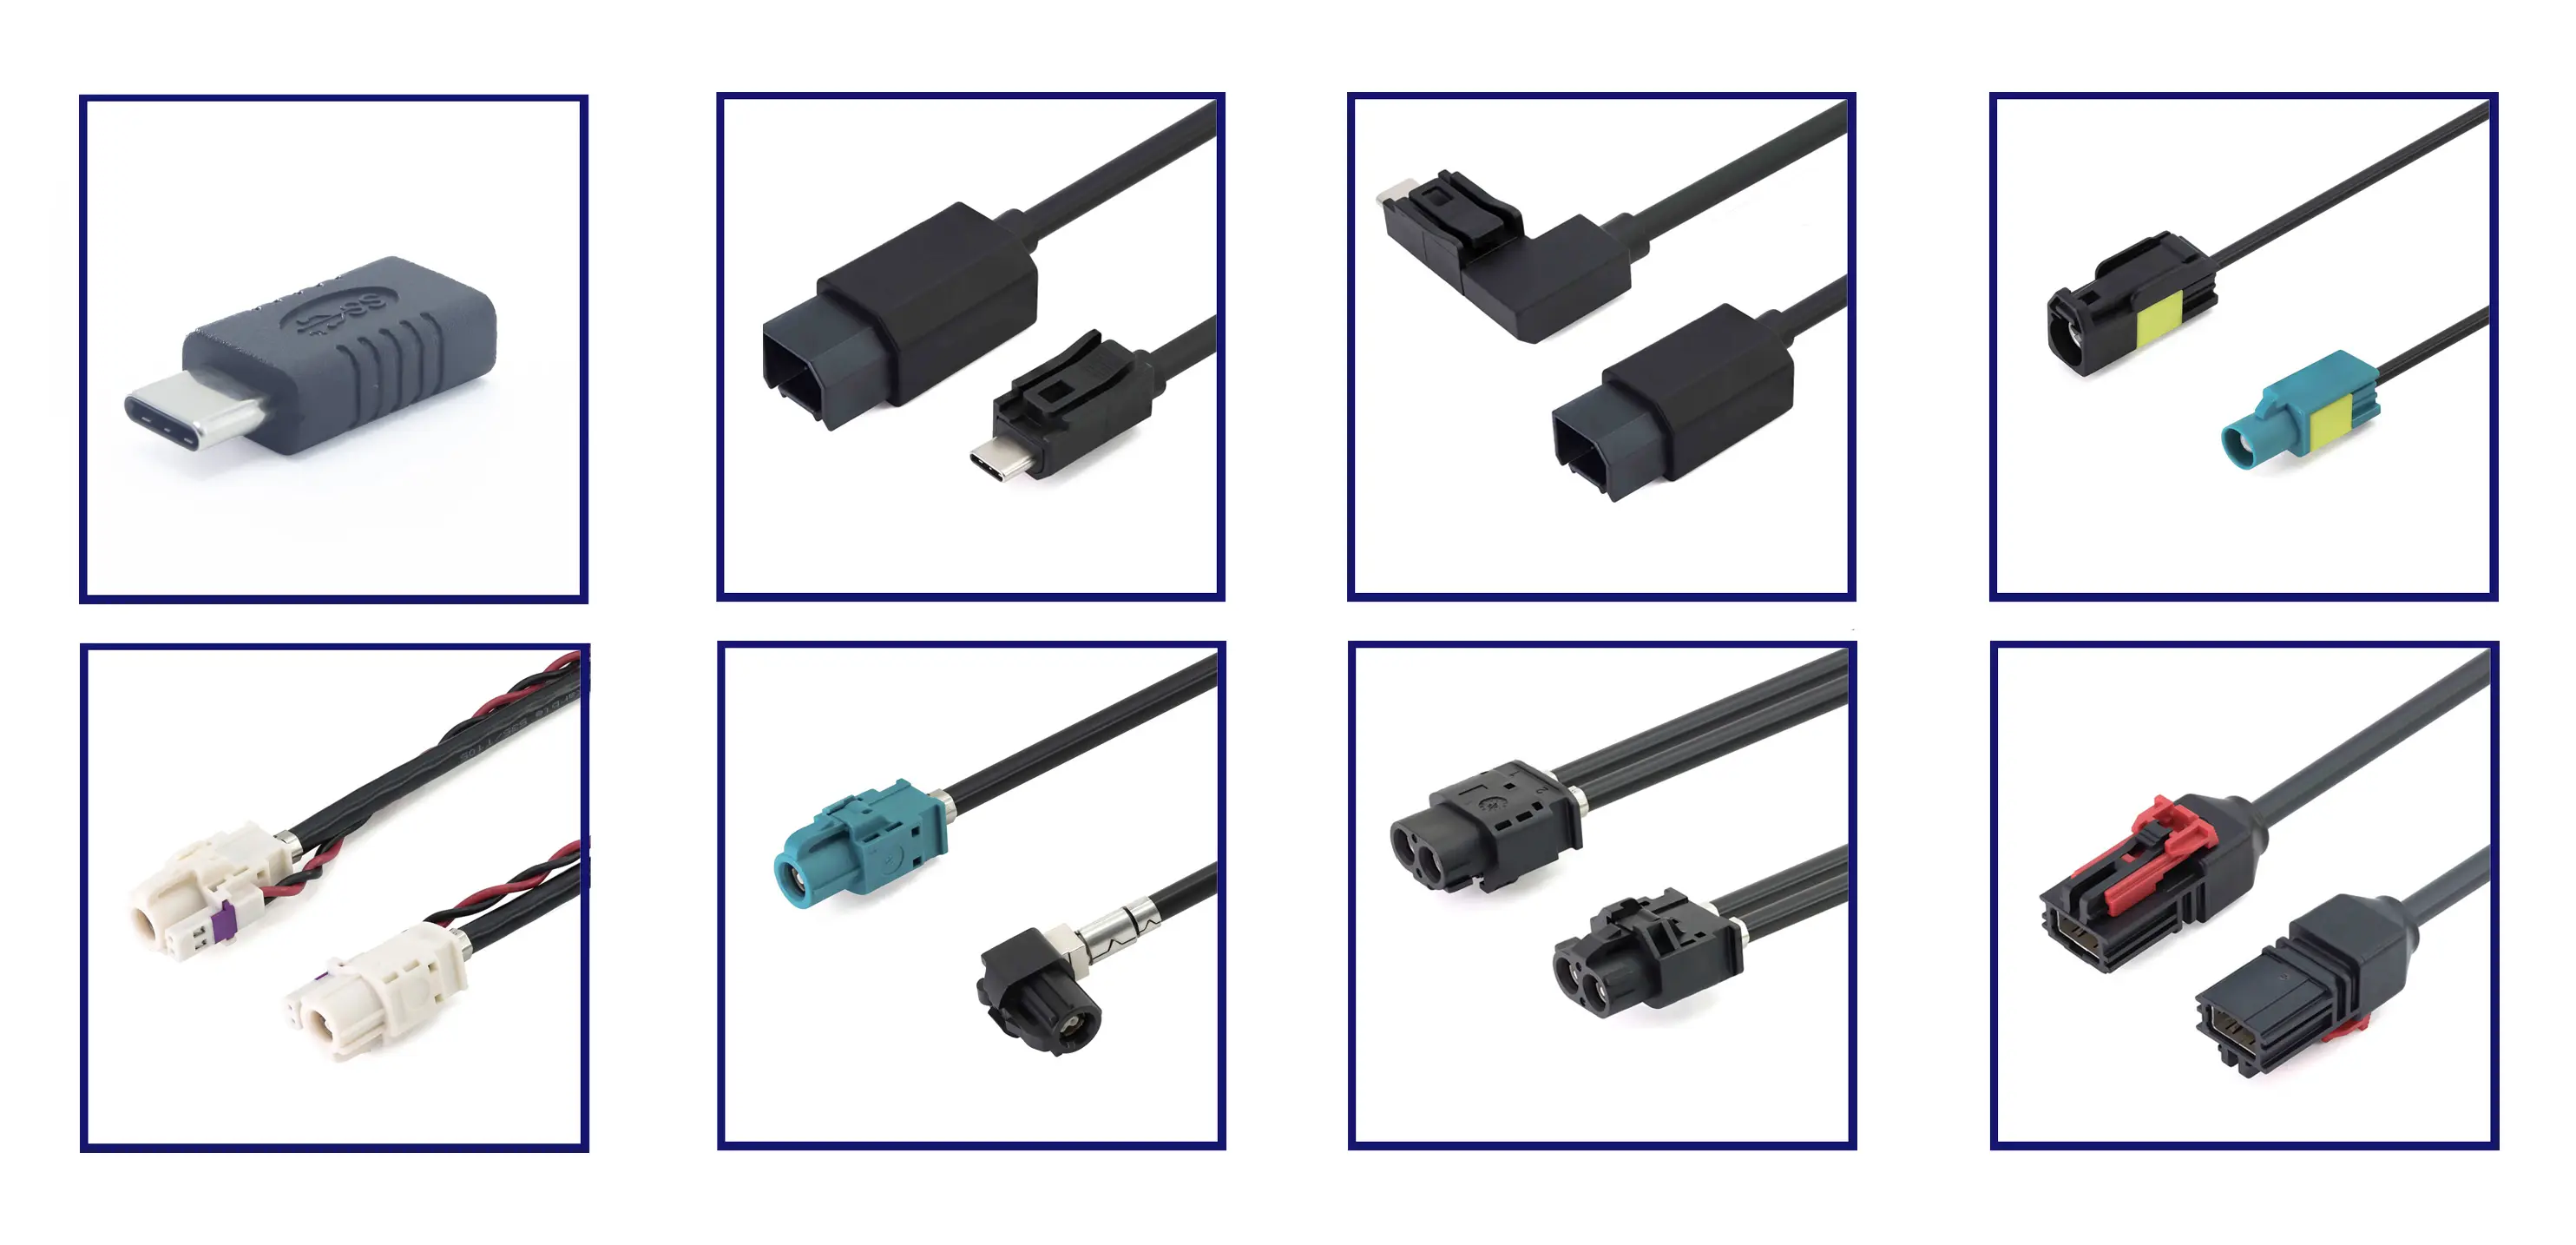 PCT-USB3.1 Super-Schnell-PCV-Kabel SS USB3.1 Typ A männlich zu USB3.1 Typ C männlich GEN1 für schnelles Aufladen